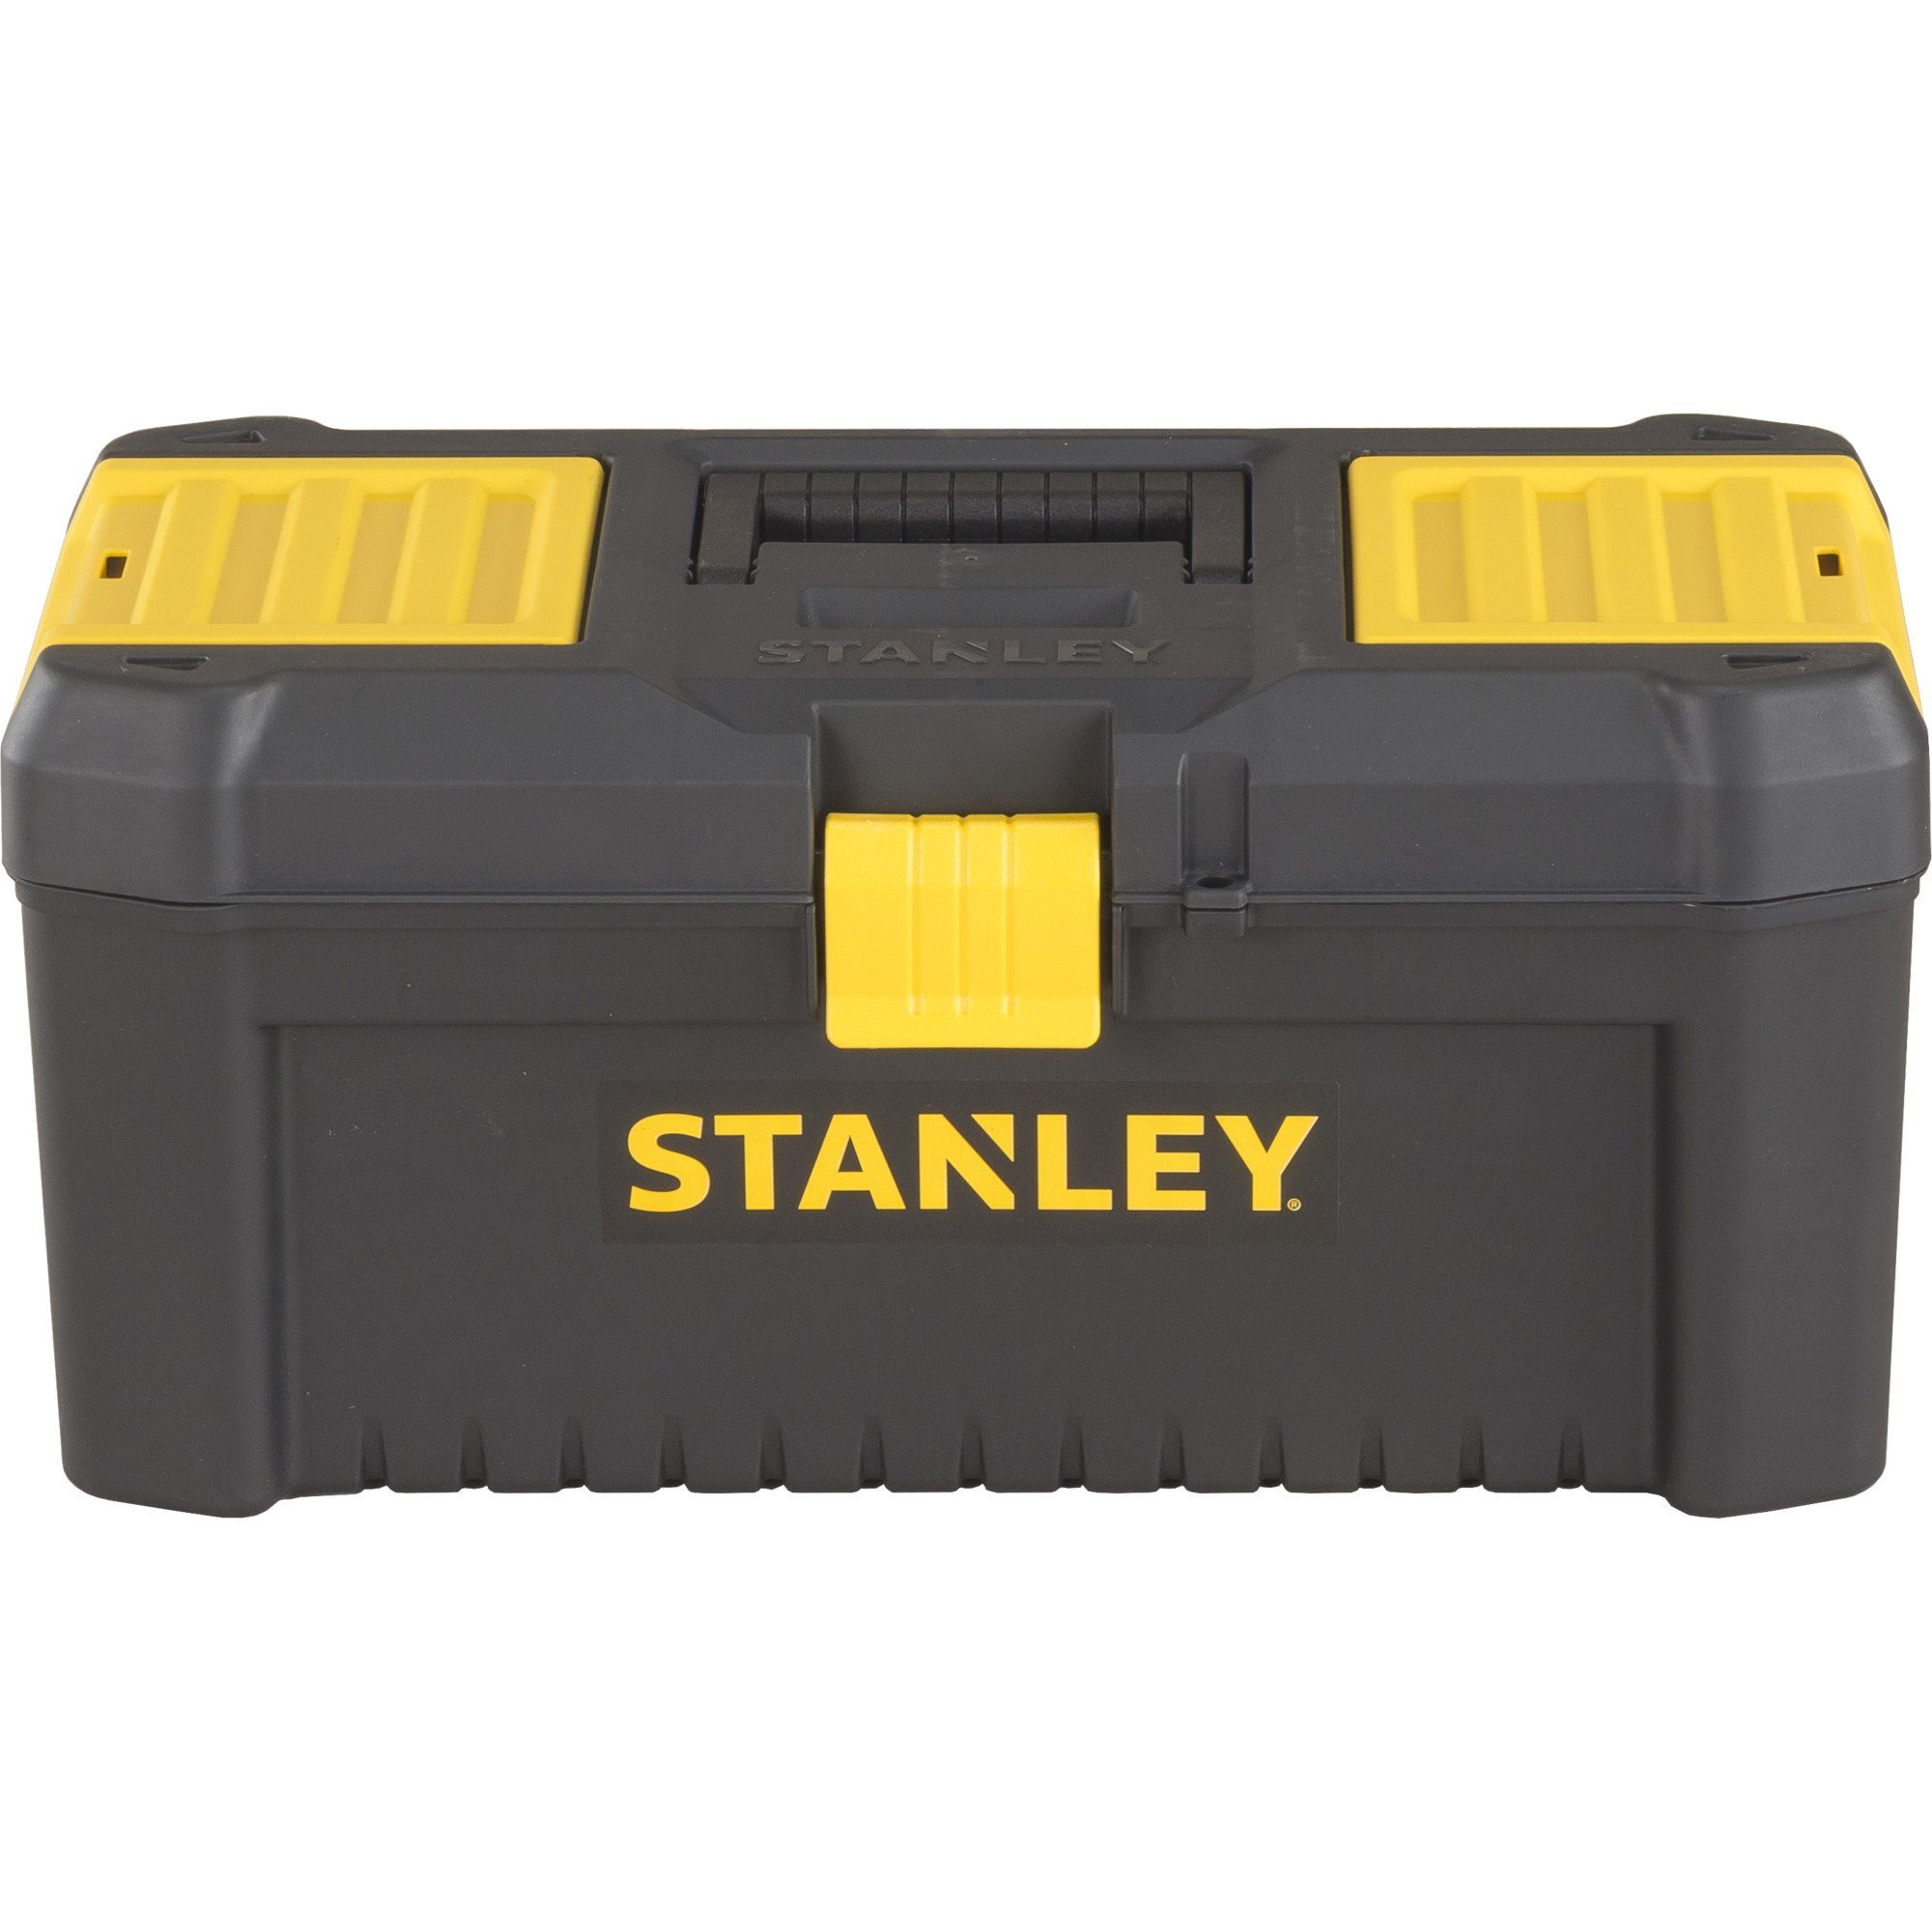 STANLEY Werkzeugbox Stanley Essential 16, Werkzeugbox